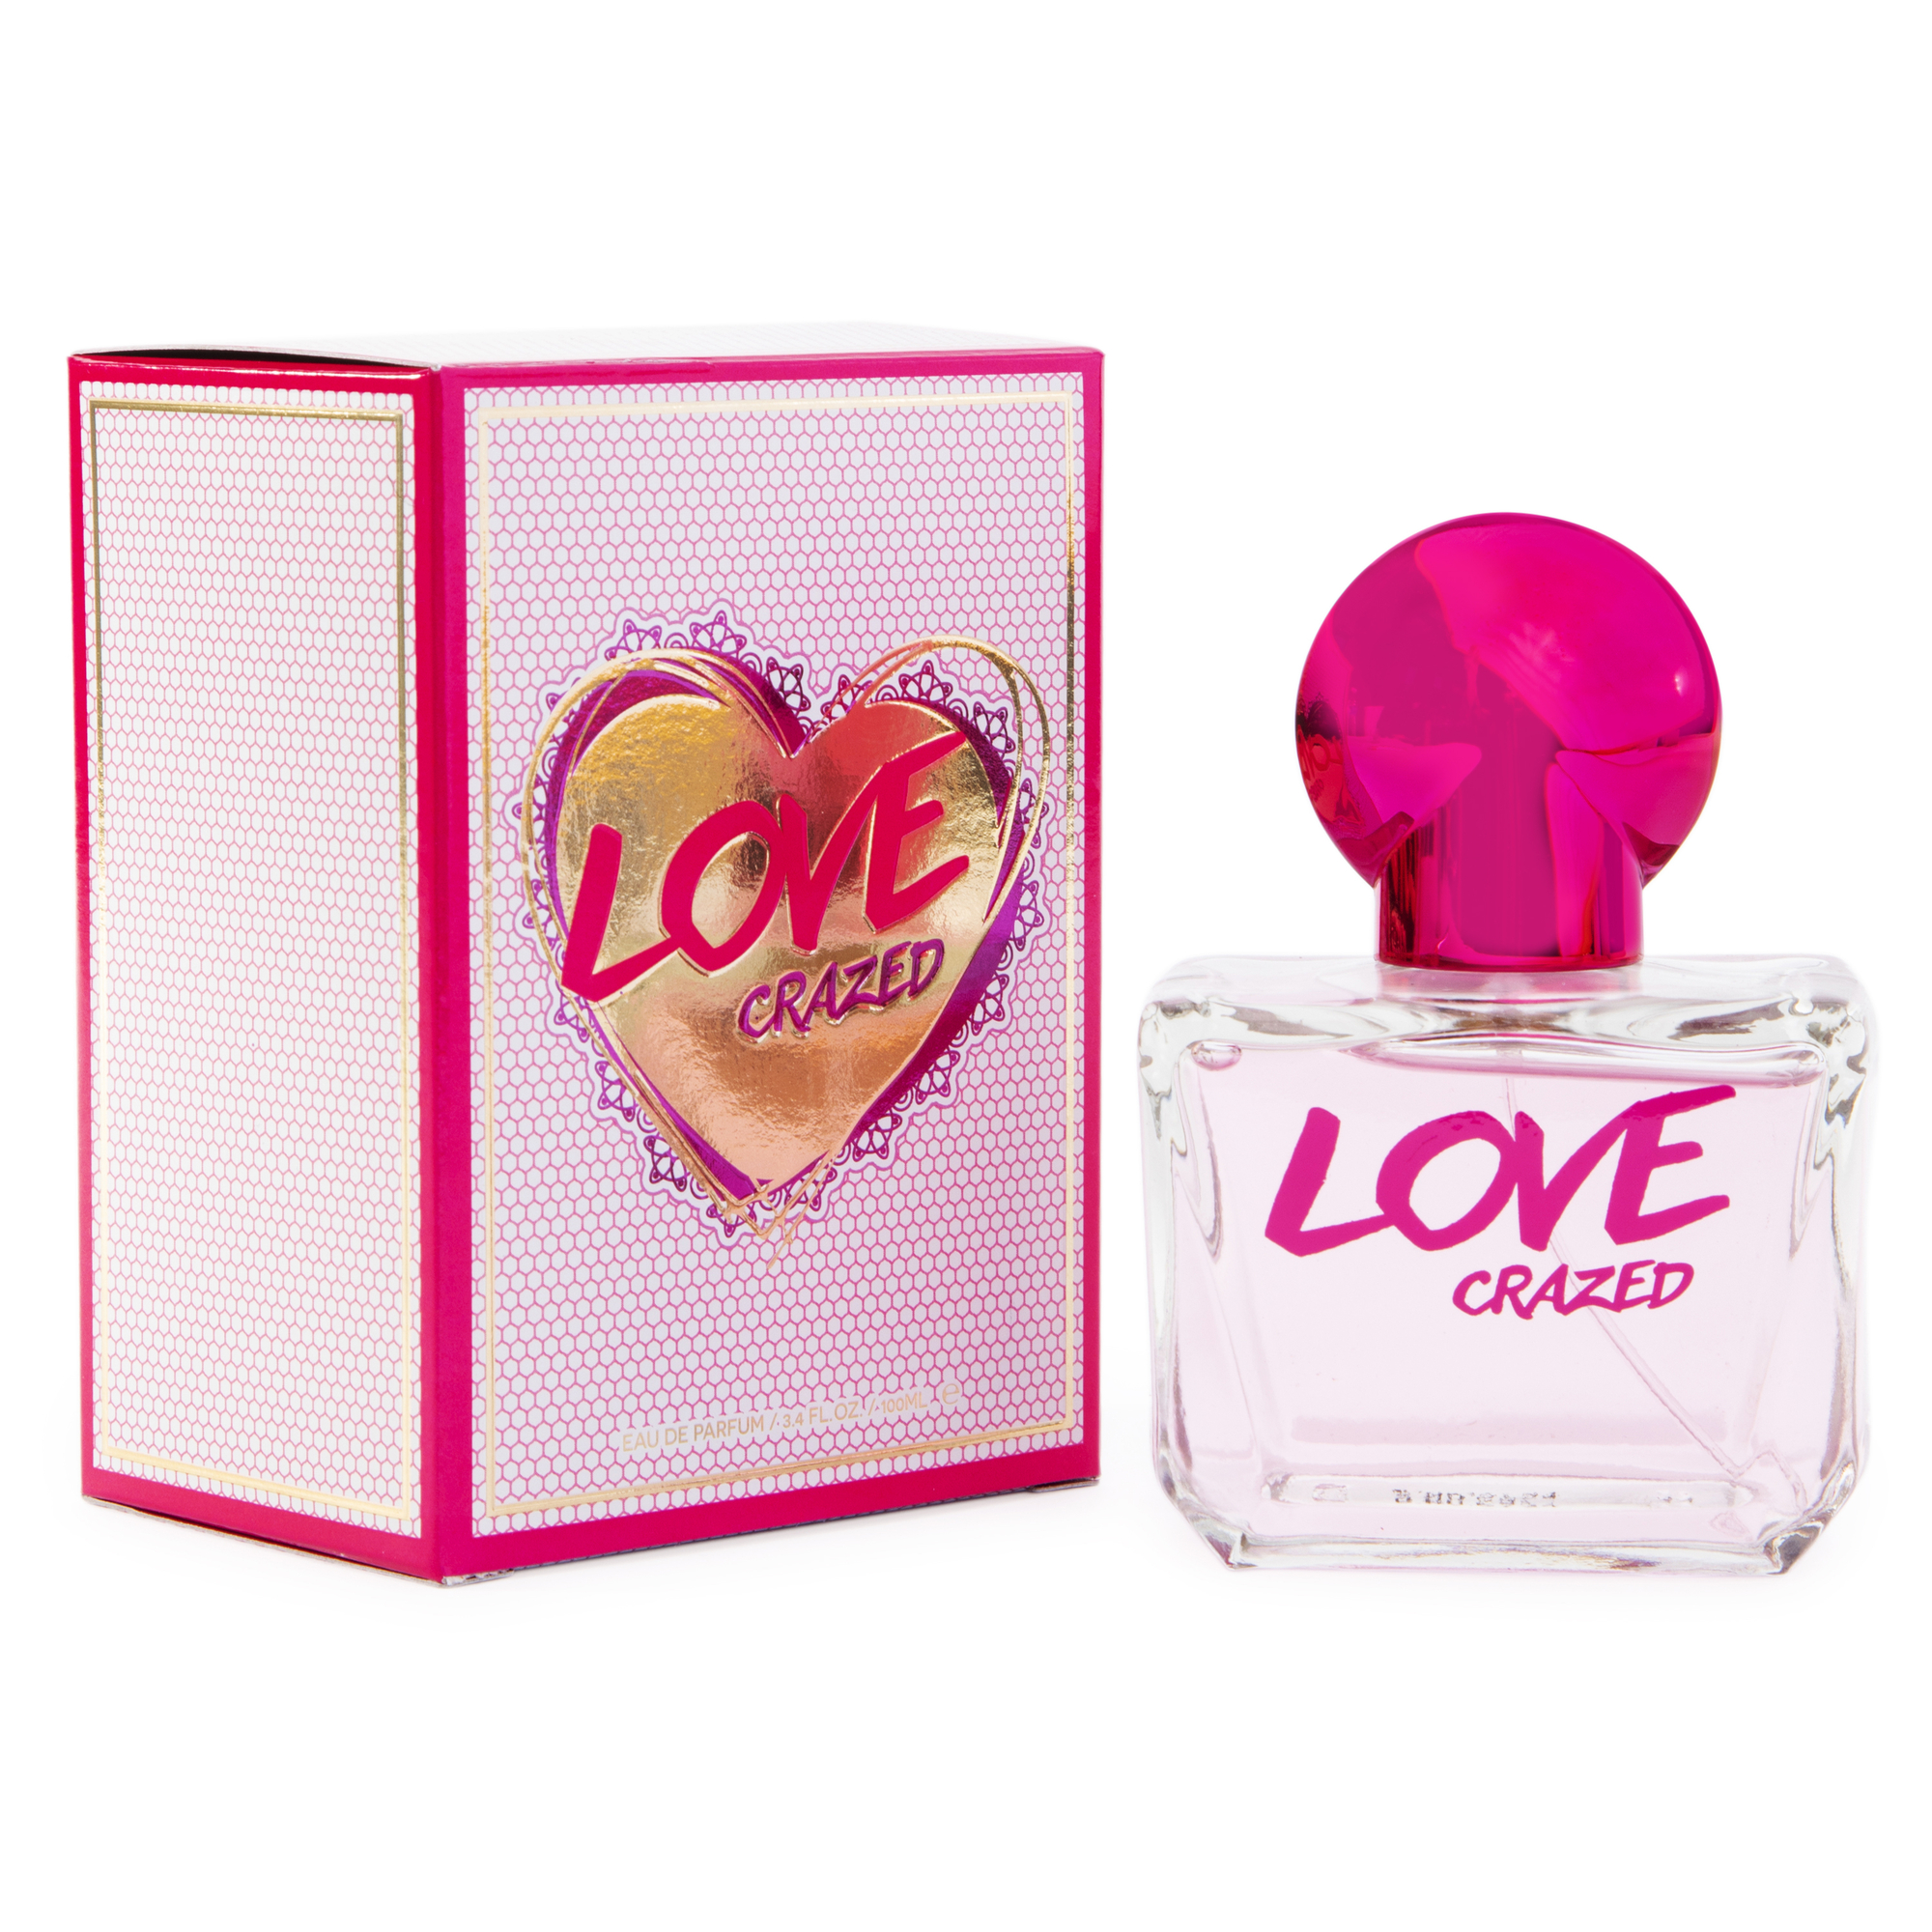 love crazed eau de parfum 3.4oz